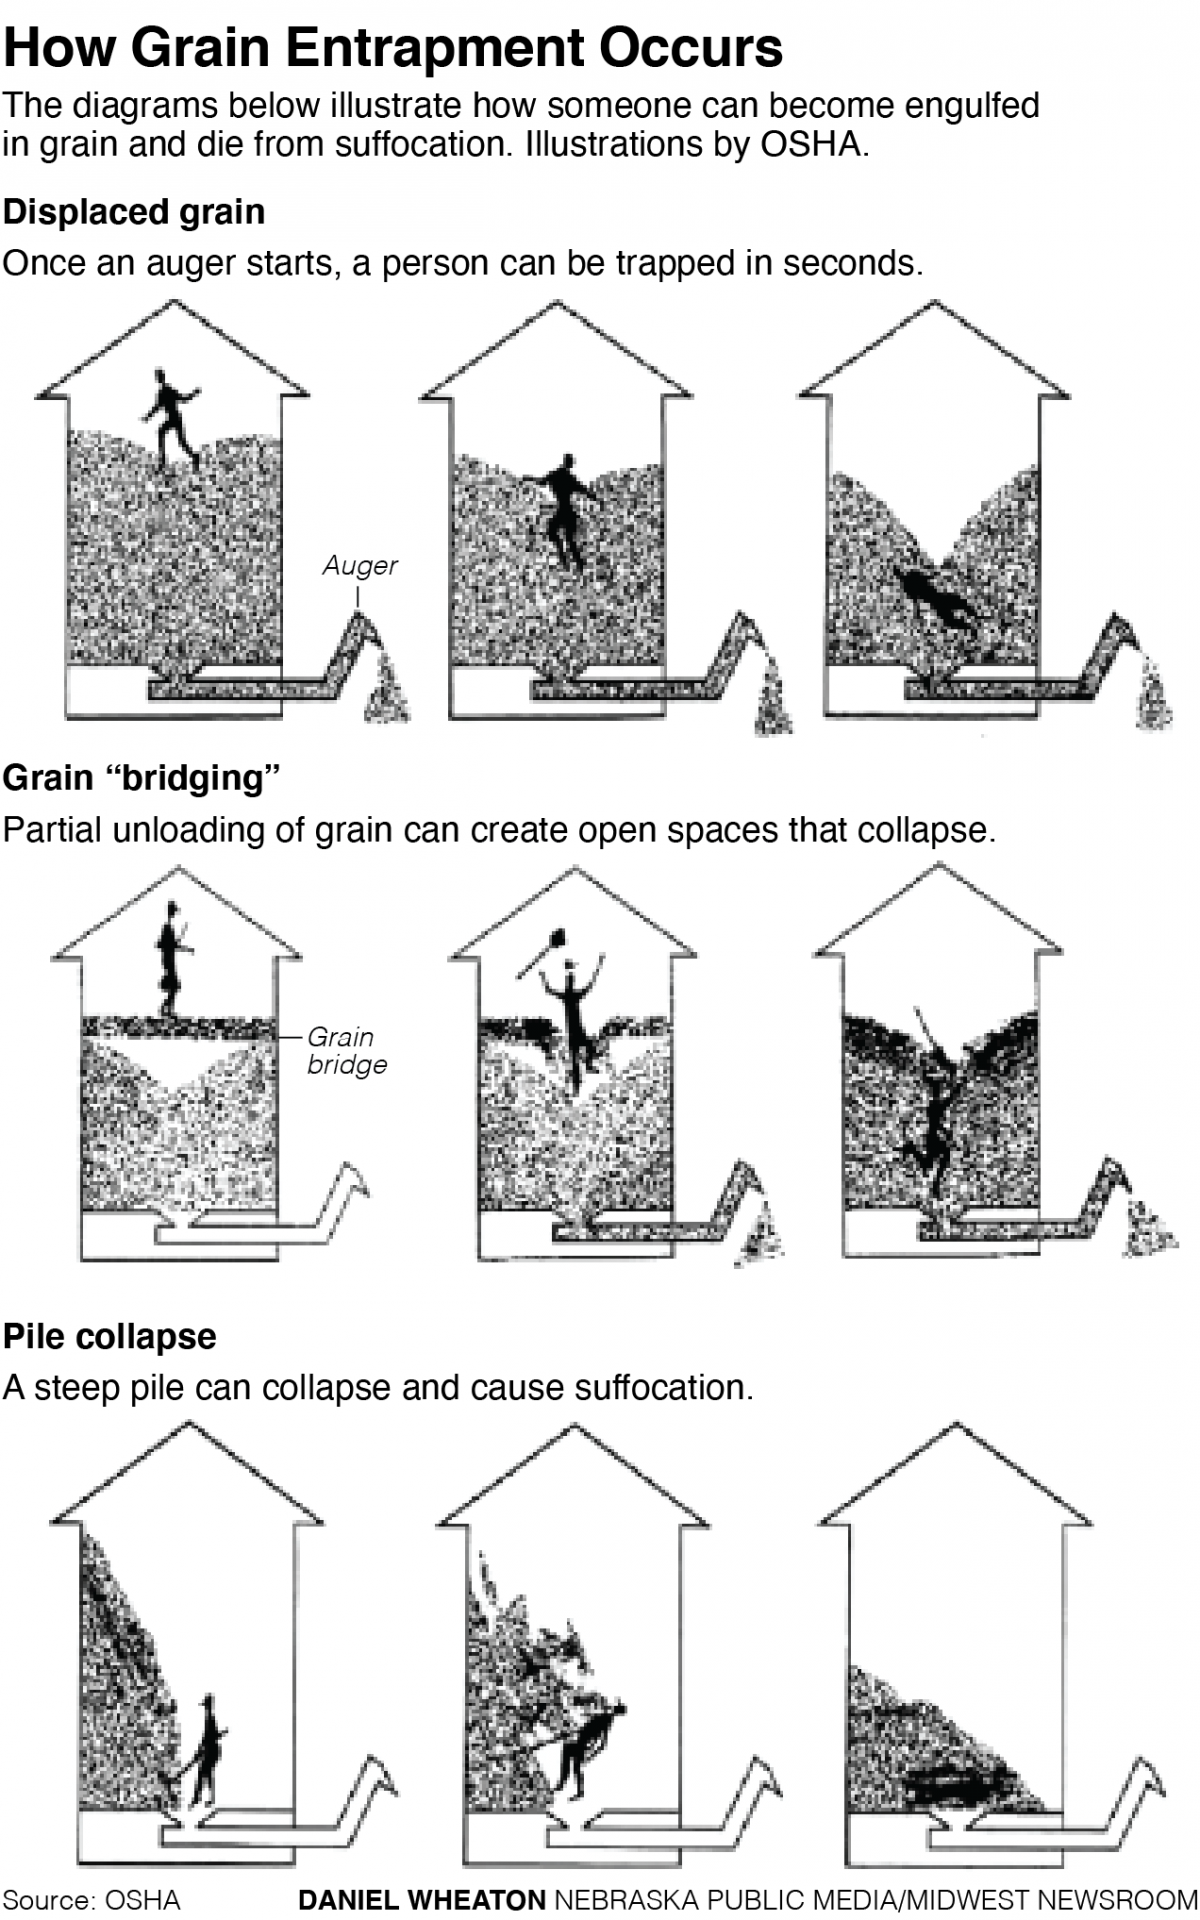 a diagram showing how grain bin entrapment happens